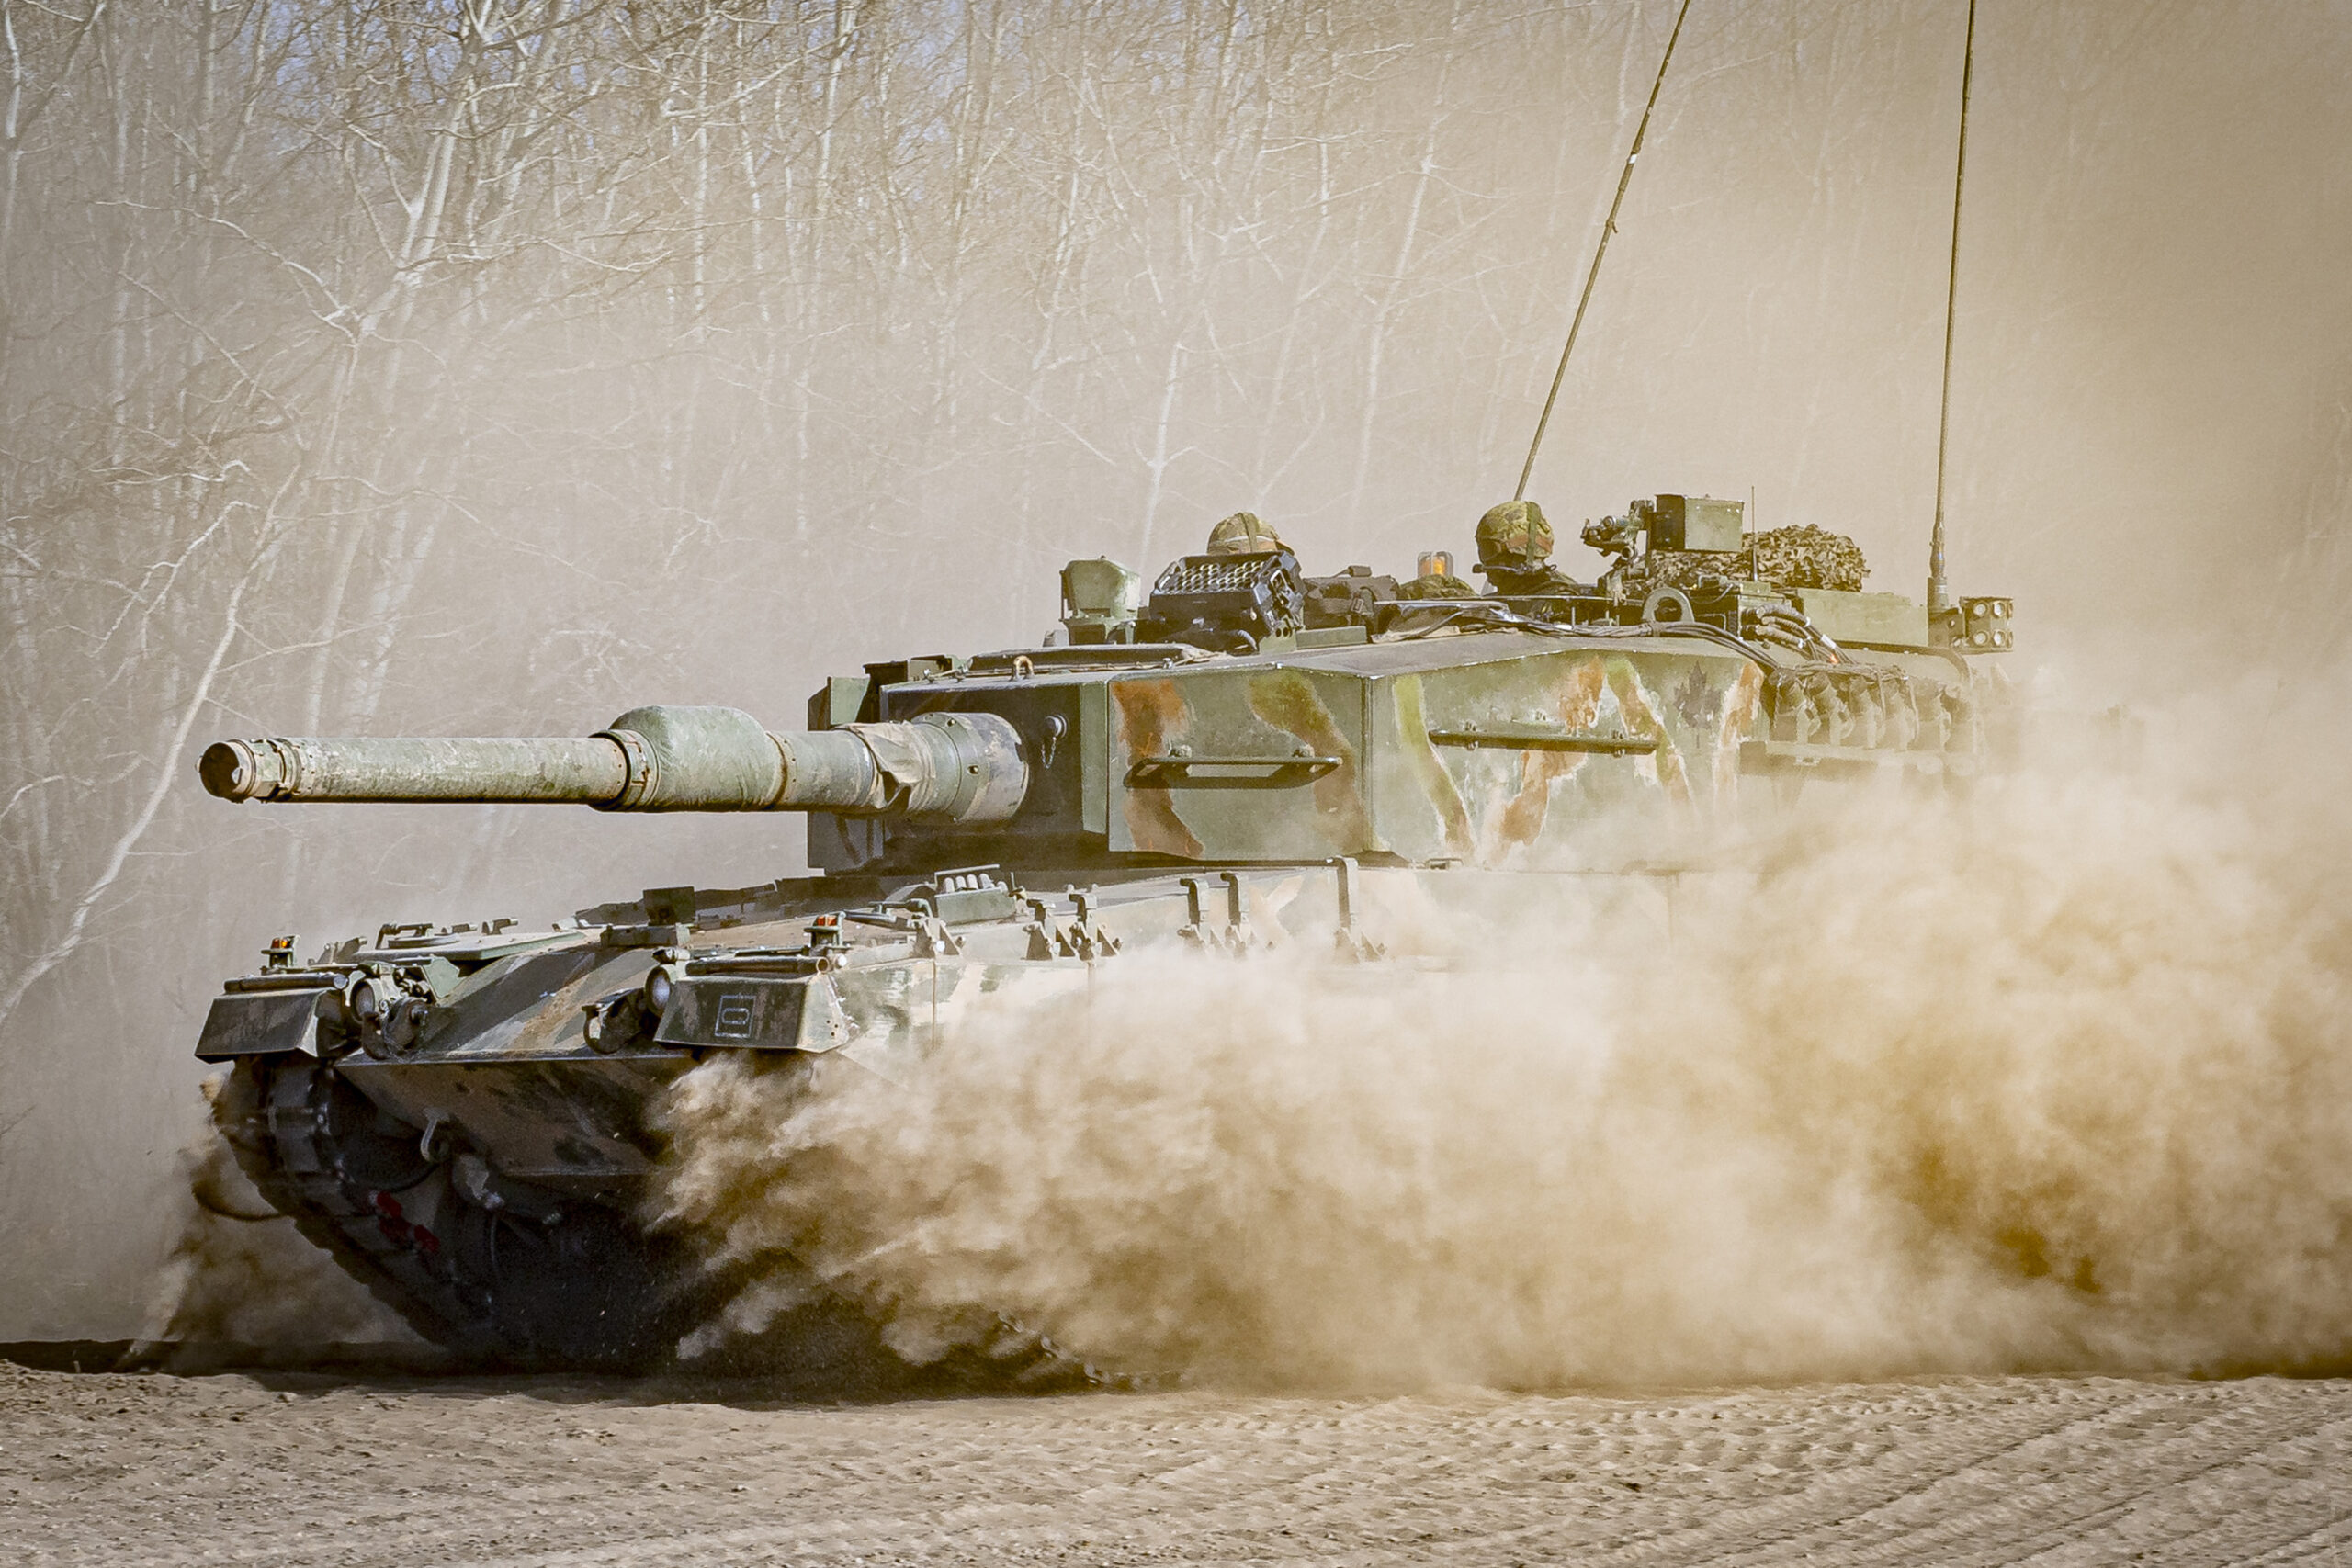 Leopard 2 main battle tank